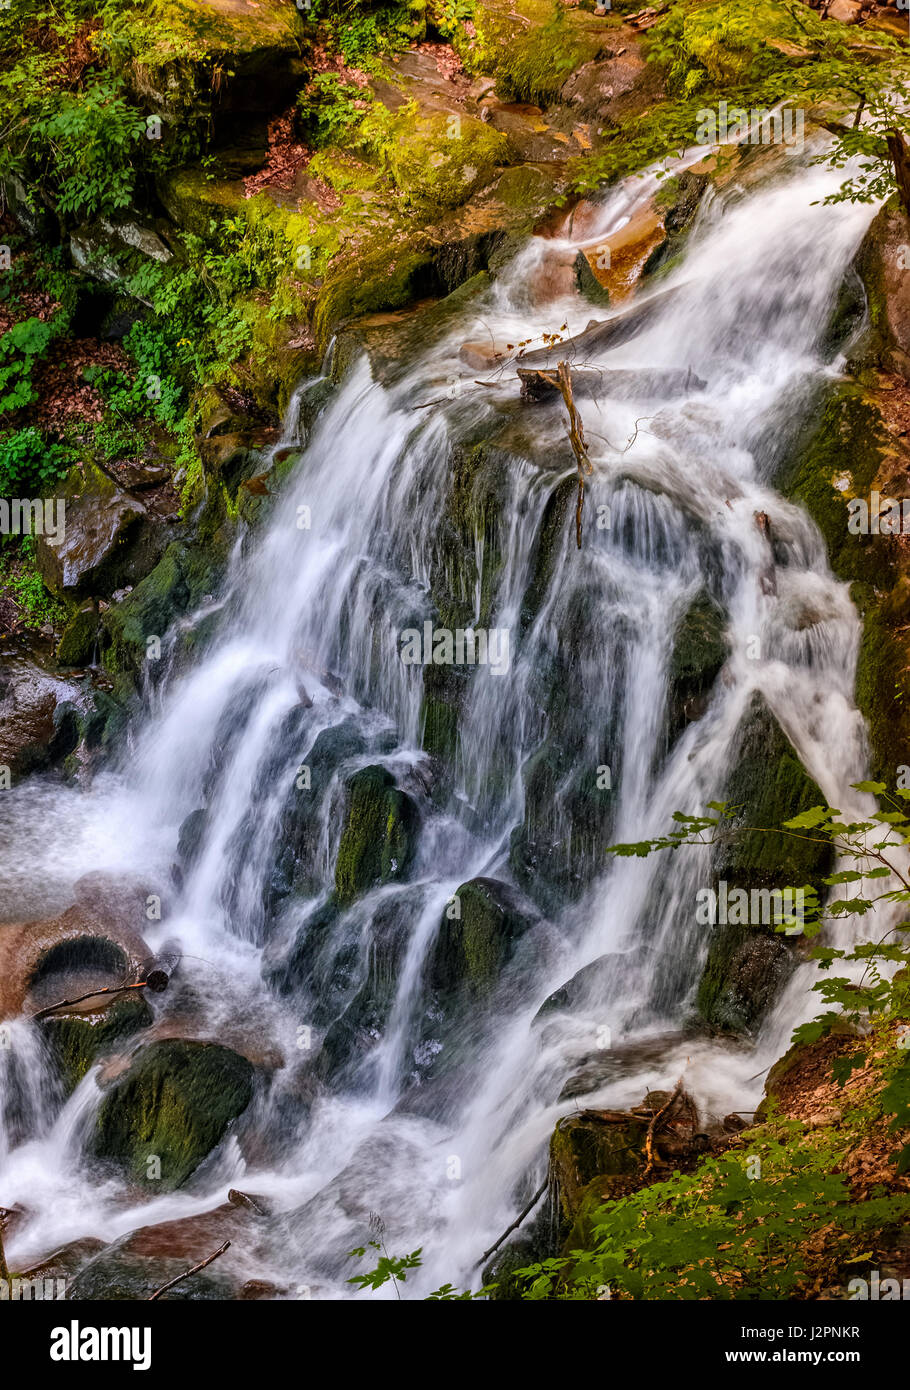 Bella cascata Shypot esce da una collina rocciosa nella foresta. paesaggio spettacolare sul fiume di montagna vista dall'alto. viaggi popolari attracti Foto Stock